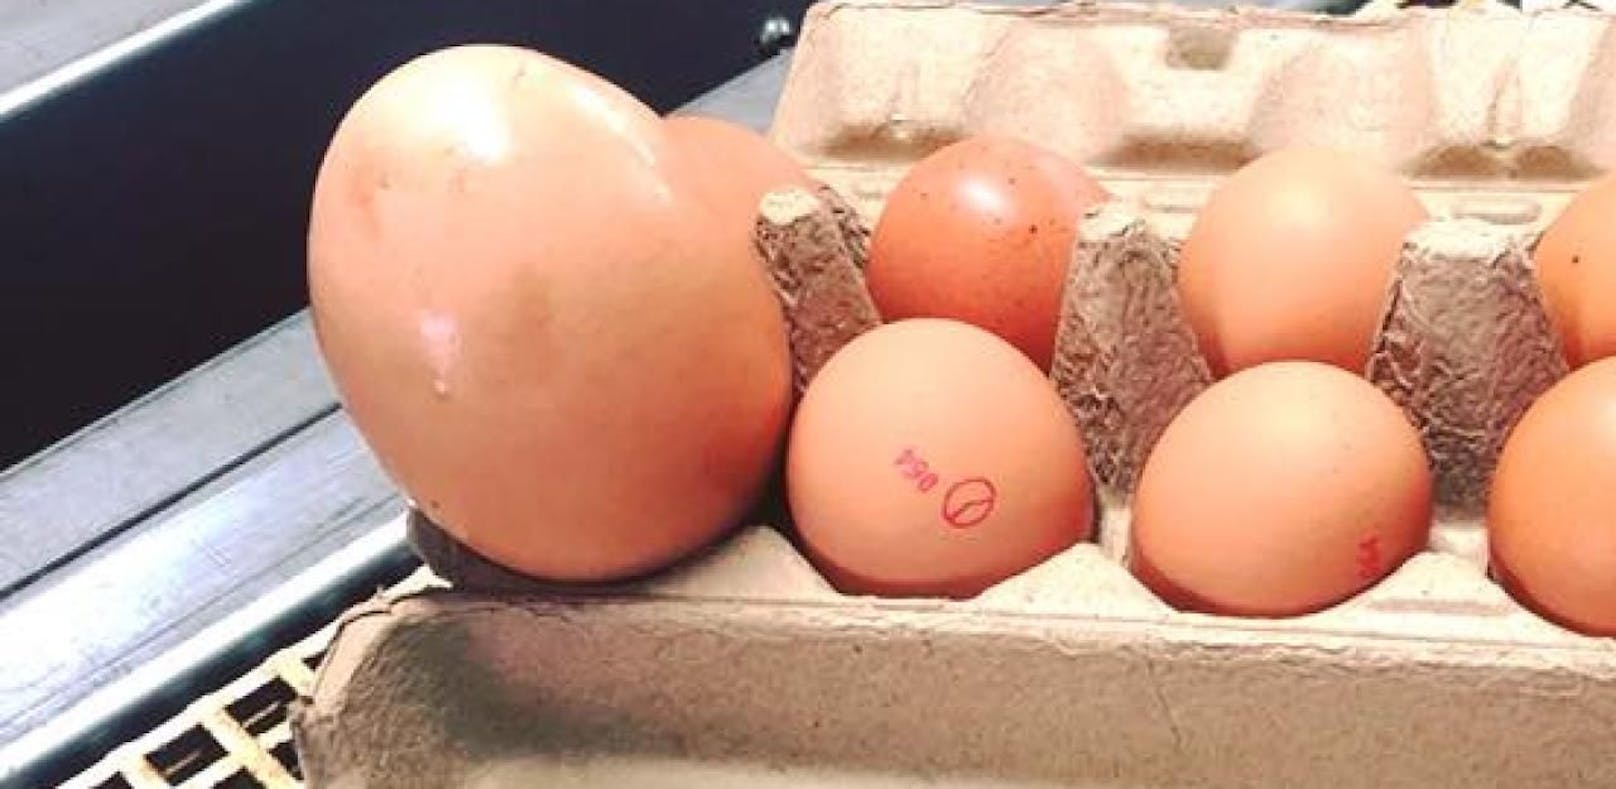 Huhn legt Riesen-Ei, das selbst Experten überrascht